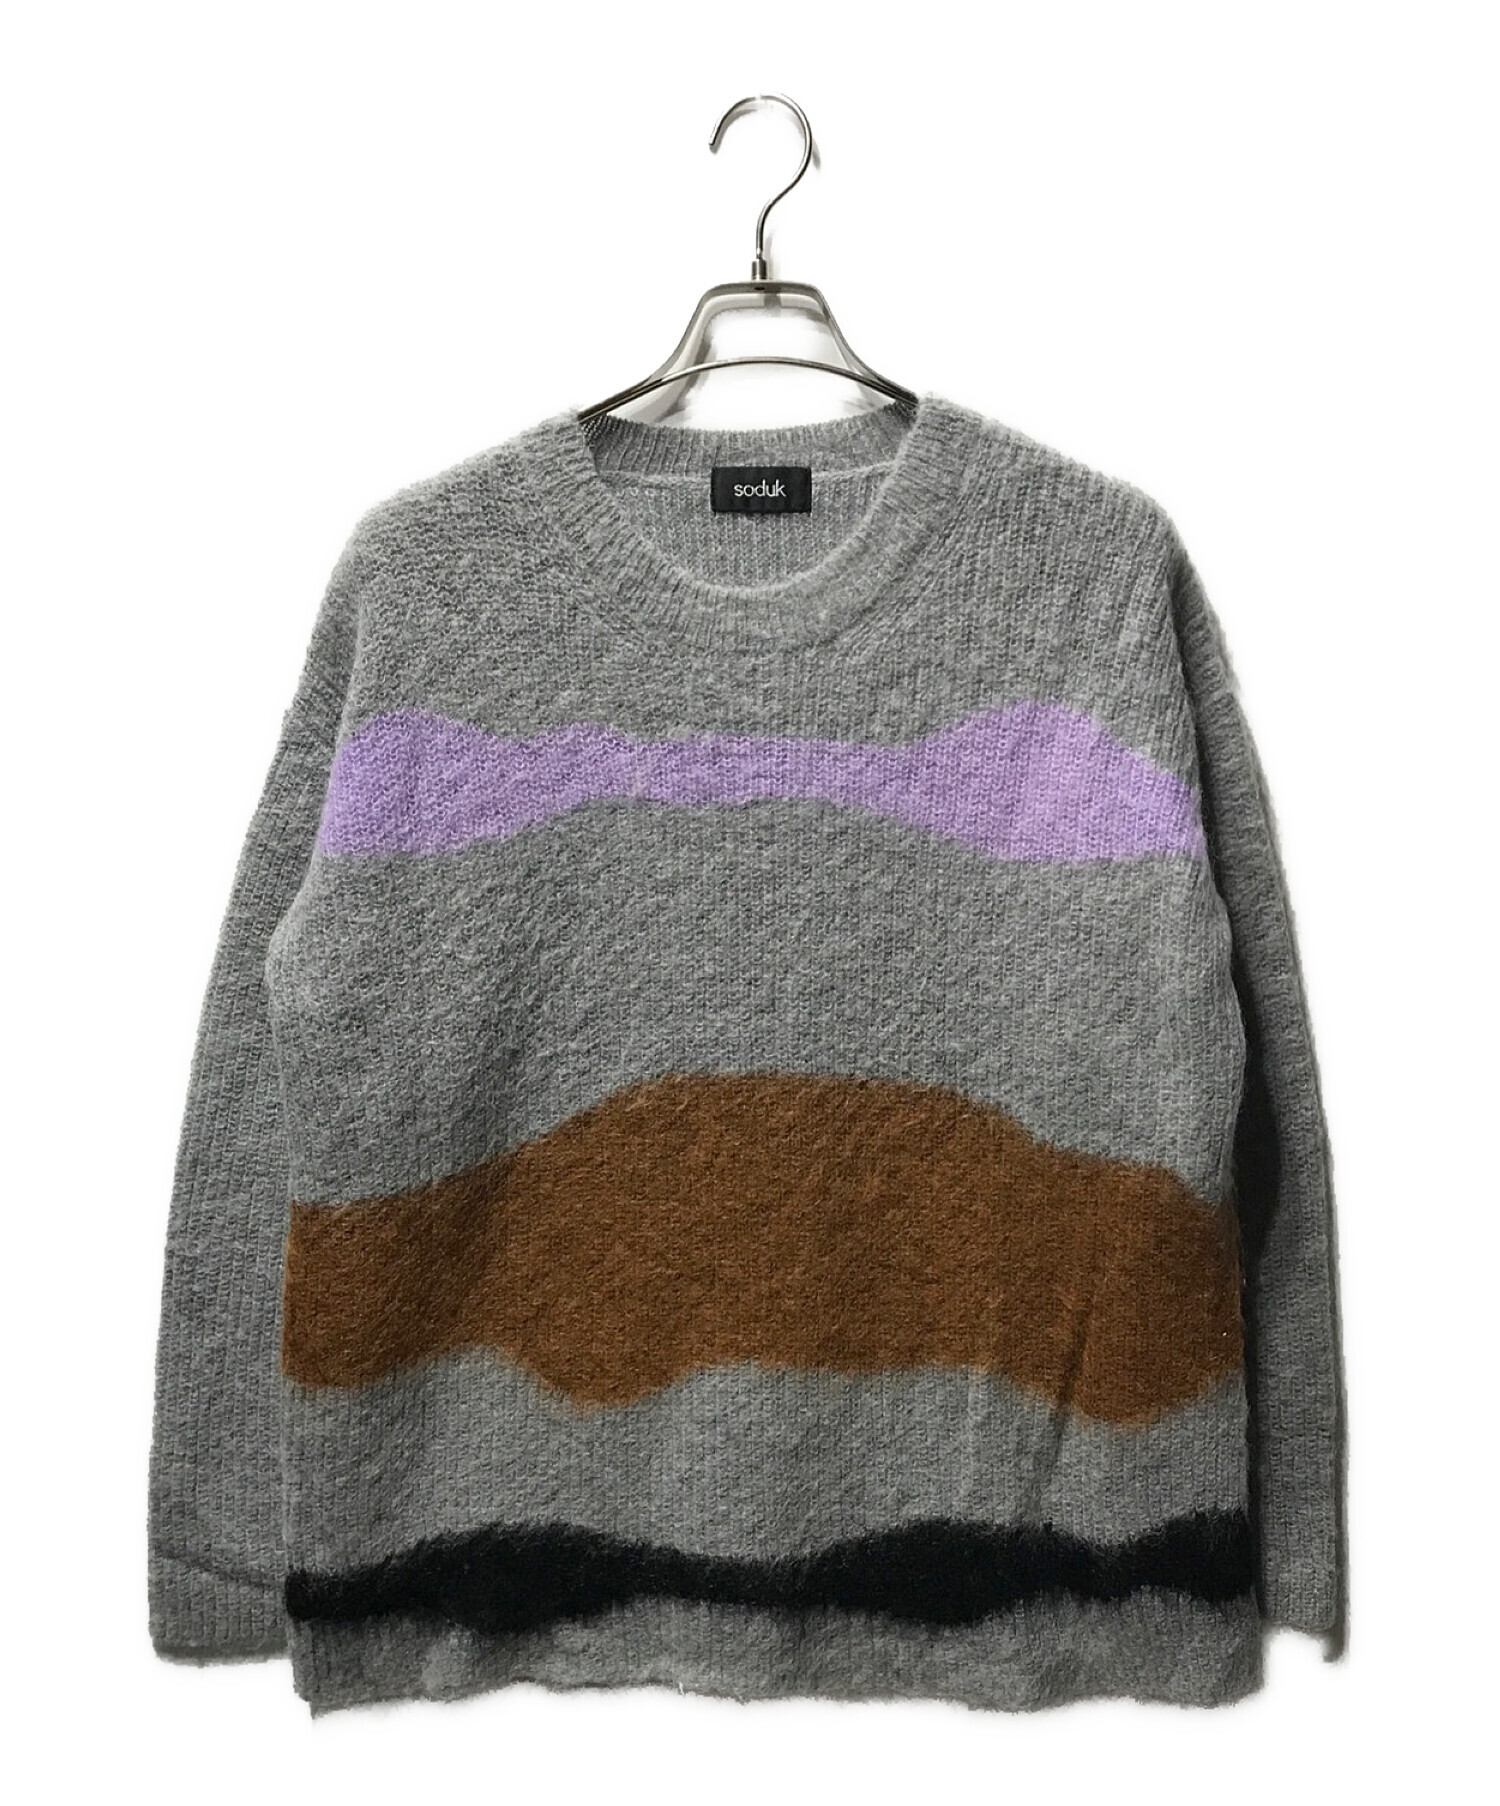 モヘアニット値下げ soduk drawing knit top gray - ニット/セーター